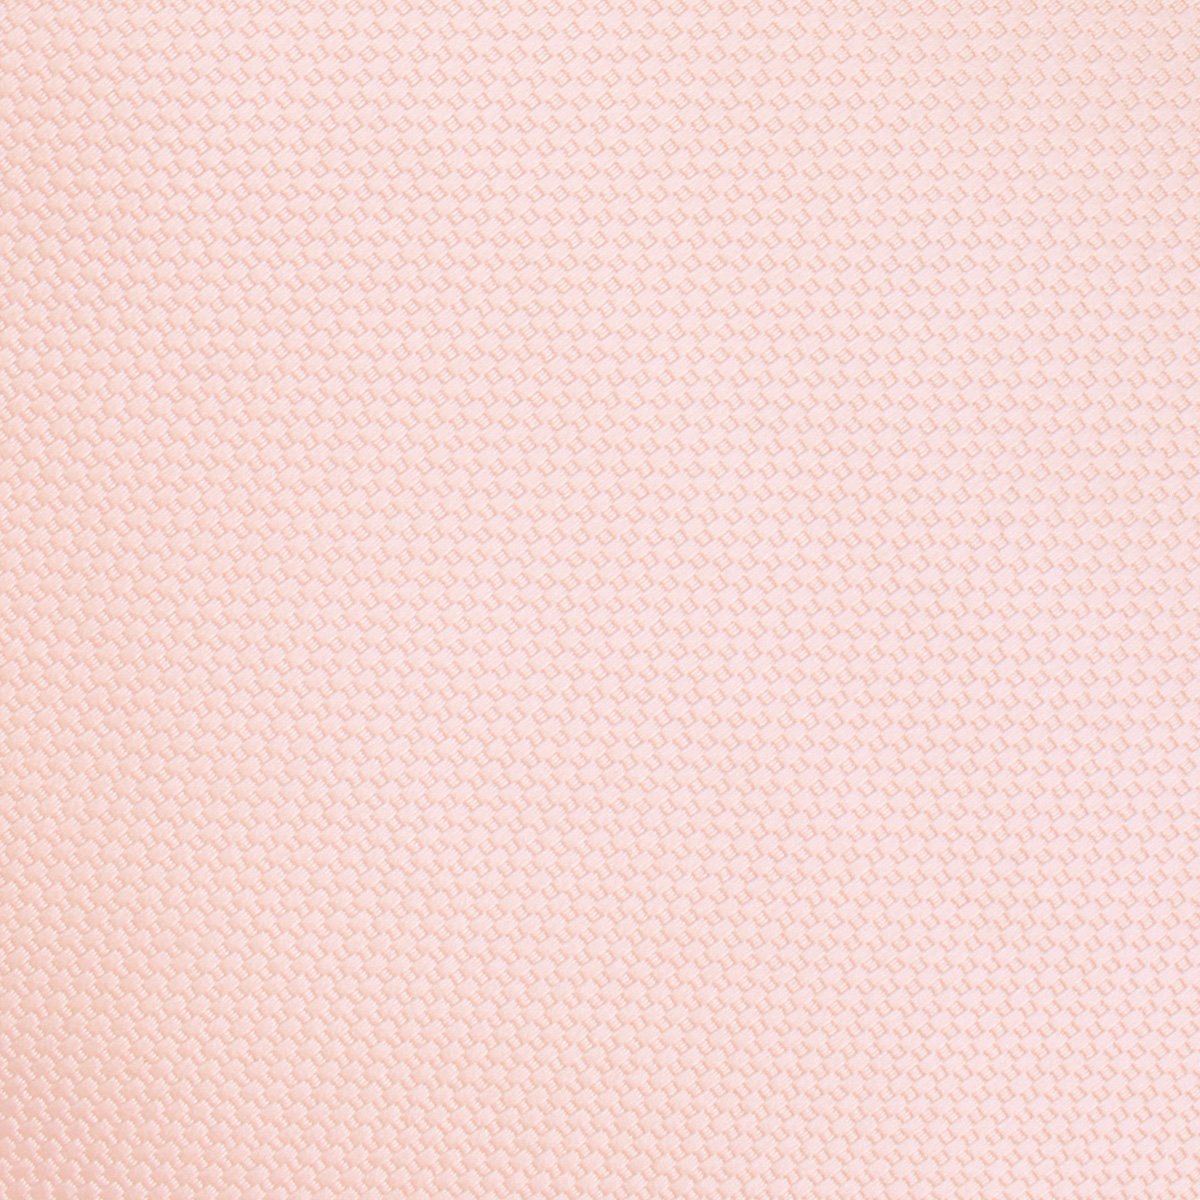 Blush Pink Basket Weave Necktie Fabric